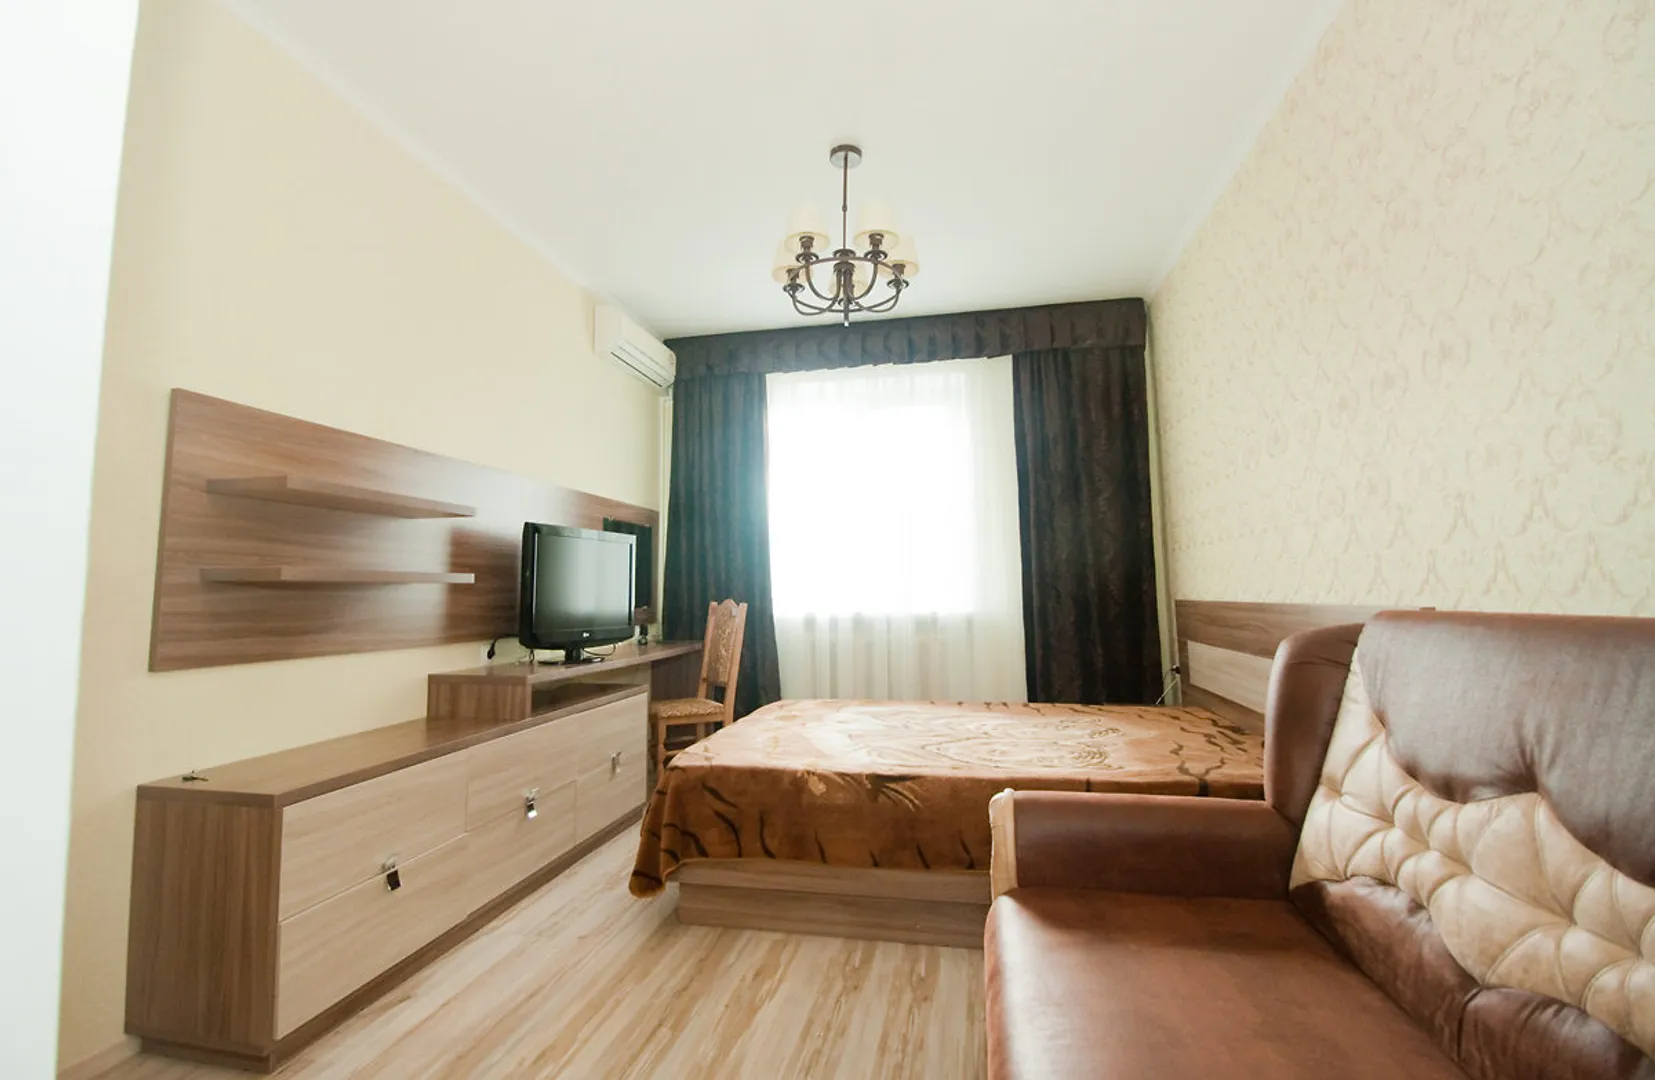 Спальня: комната 15 м2.  Имеет двухспальную кровать и двухспальный диван.